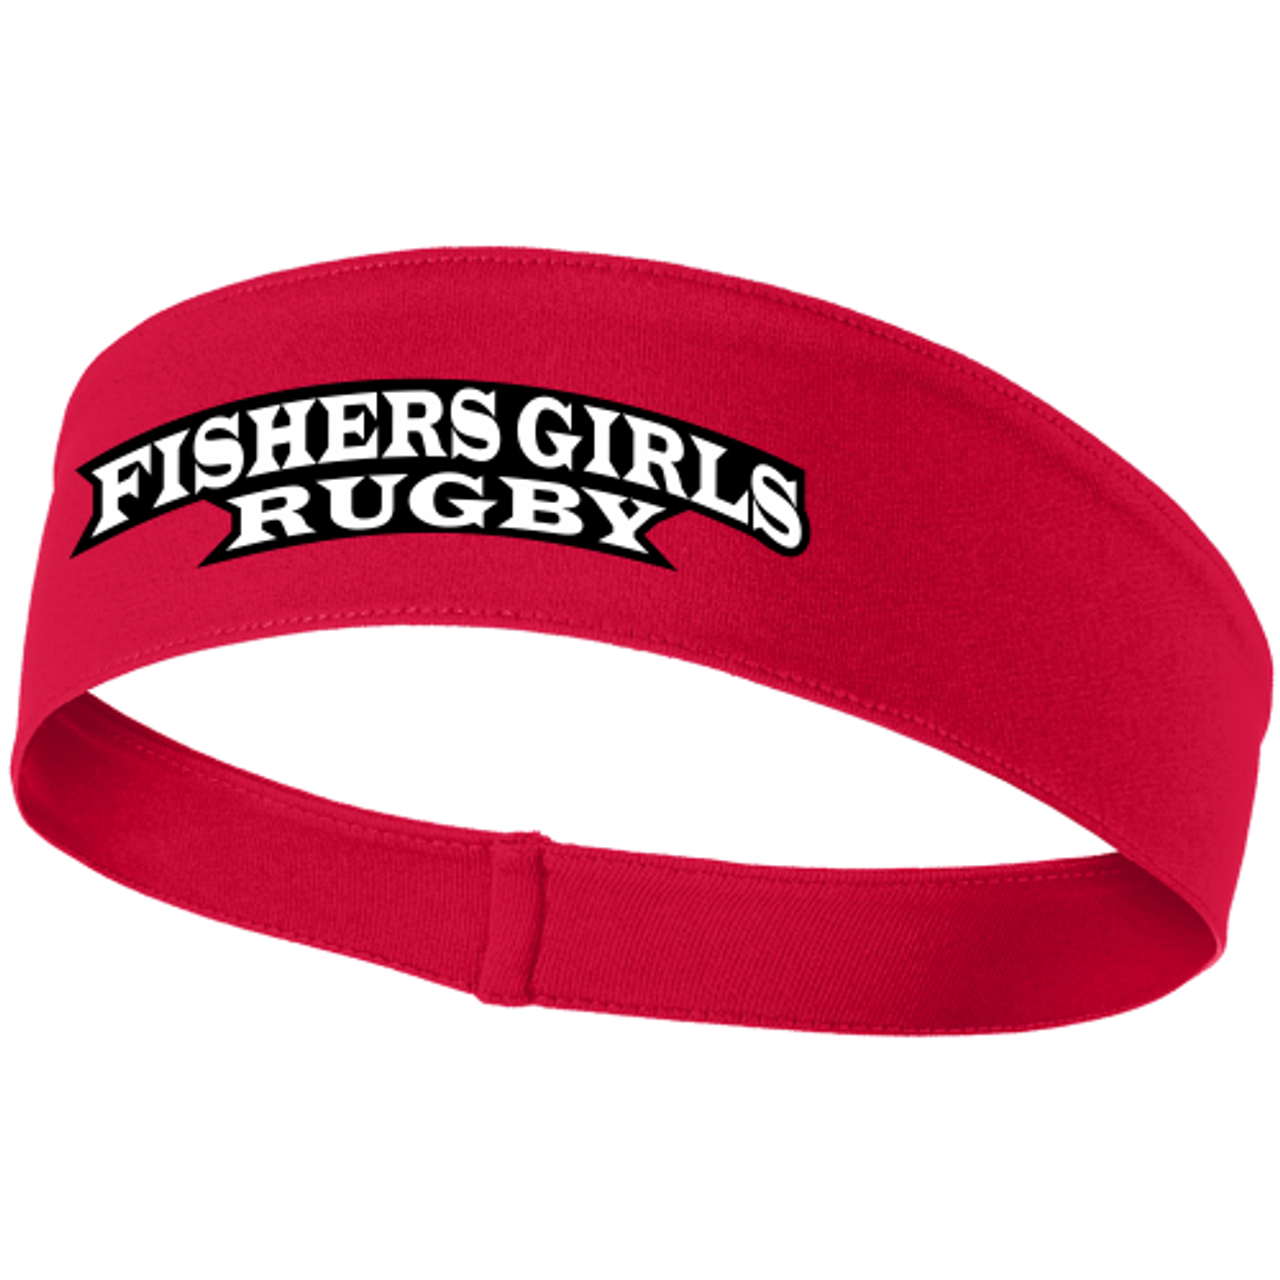 Fishers Girls Performance Headband, Red